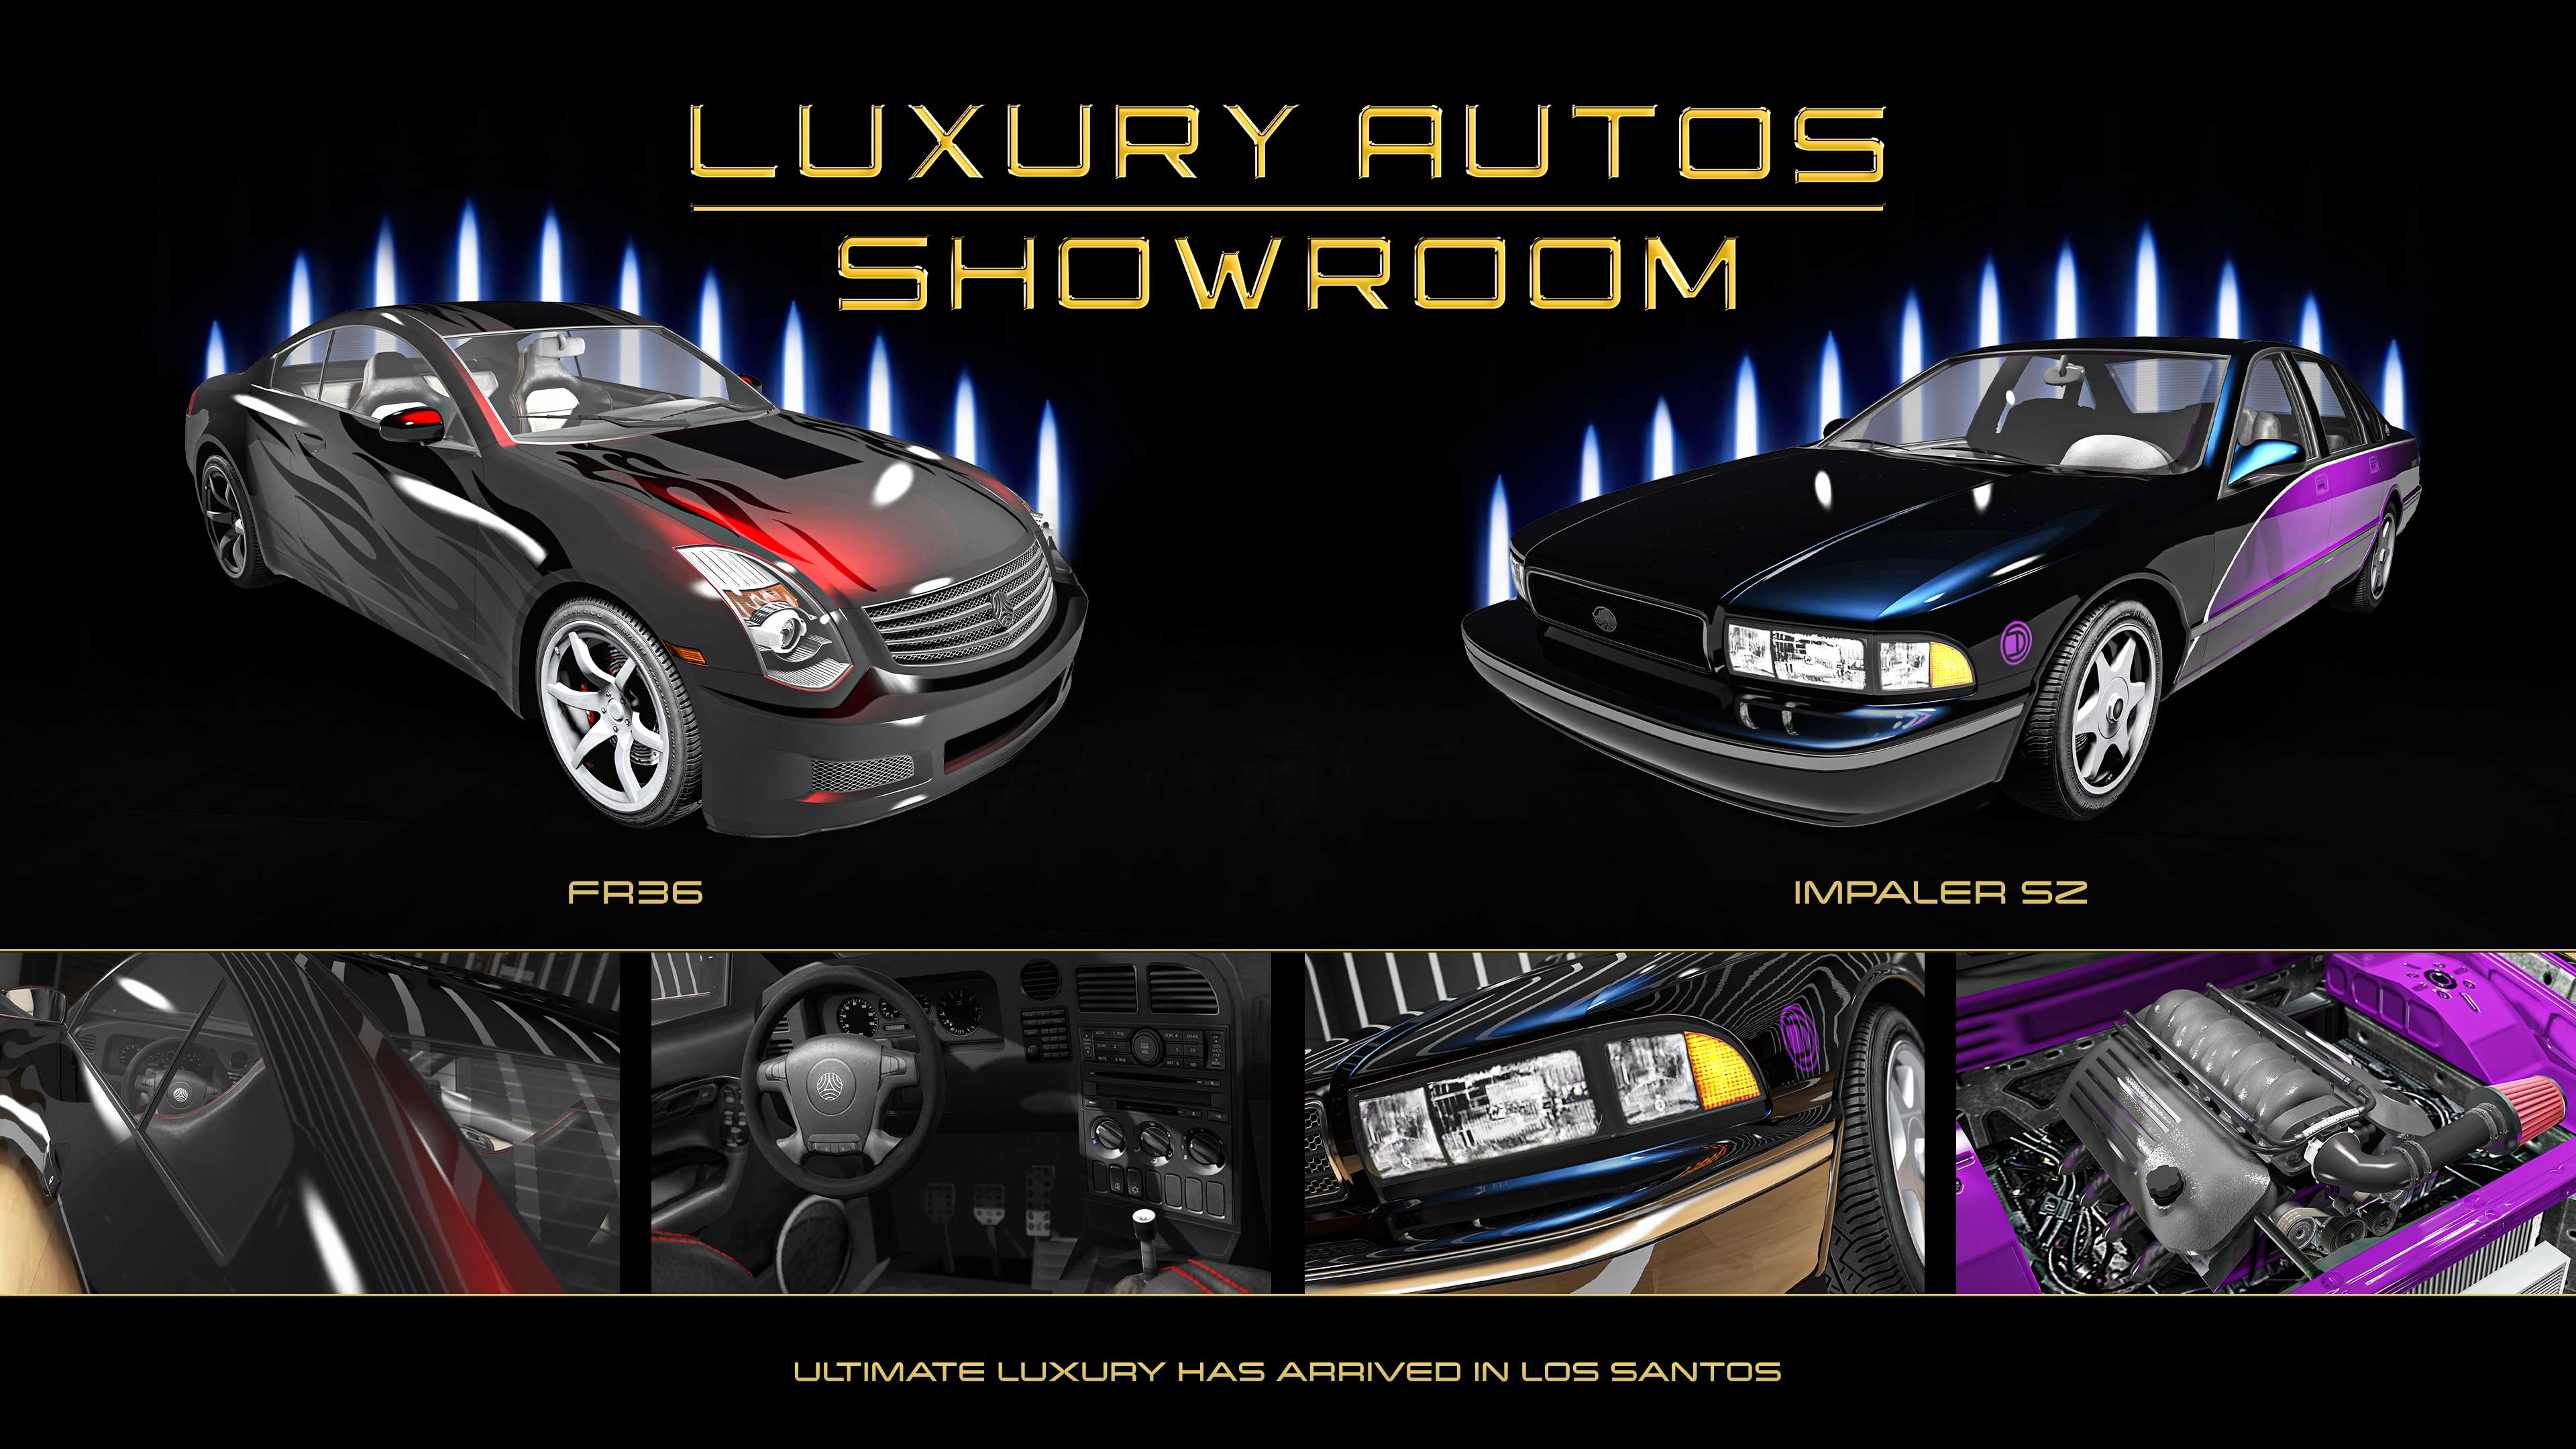 Imagen de autos en el concesionario Luxury Autos, entre los que se encuentran un Fathom FR36 rojo y un Declasse Impaler SZ con una pintura de diseño púrpura.